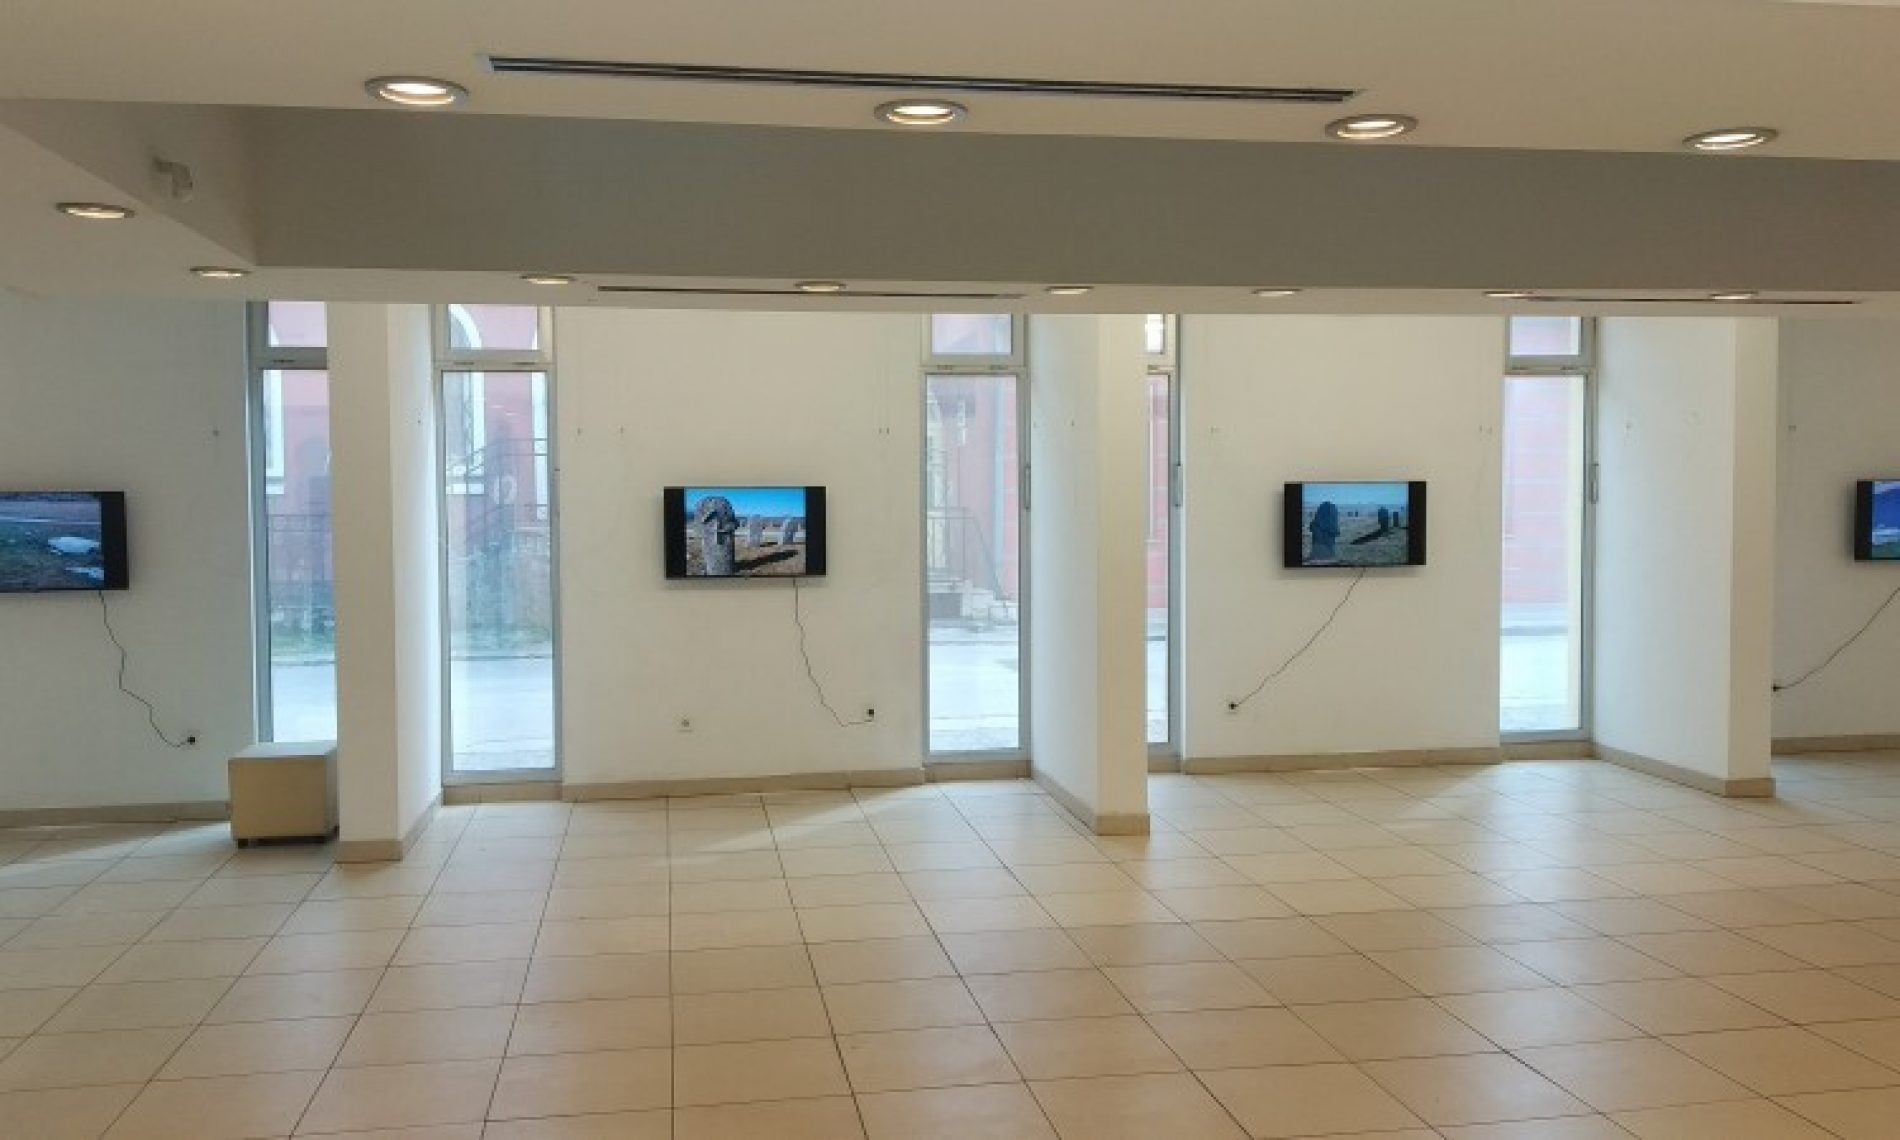 Zenički muzej postavio virtuelnu izložbu ‘Digitalni Kulin ban’